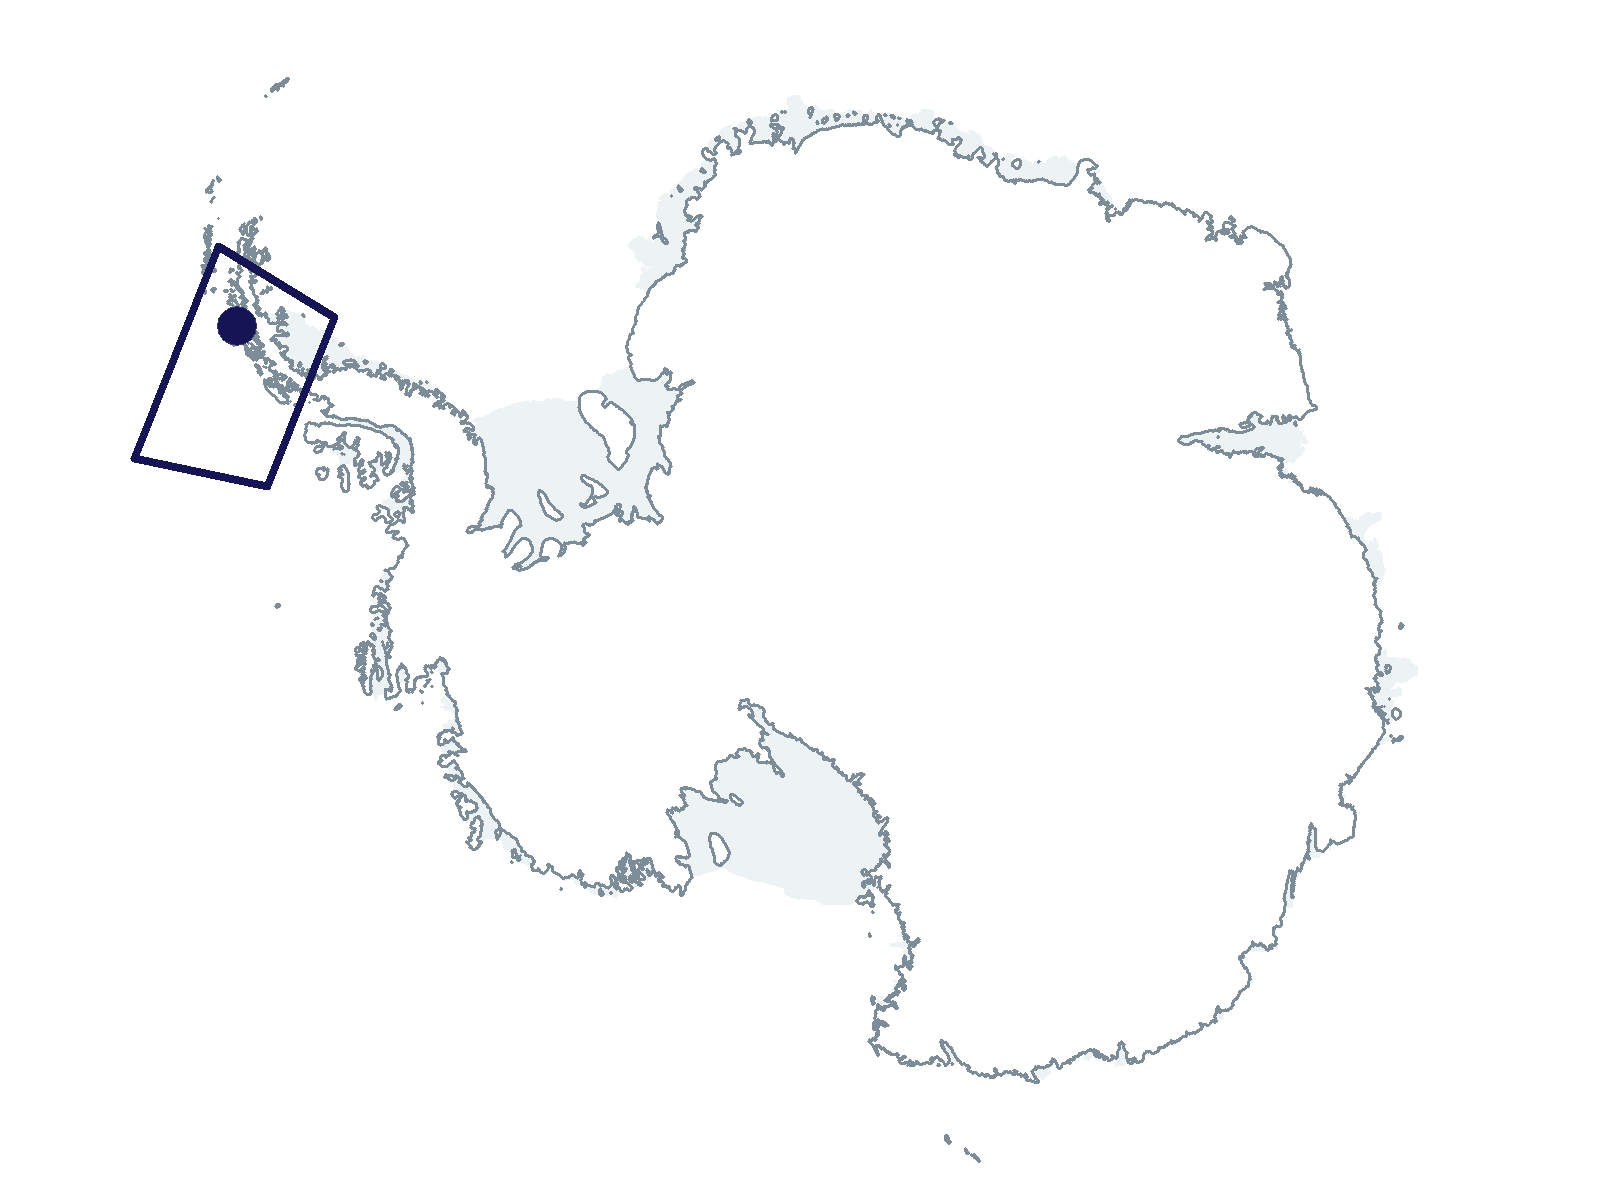 C-020-L/P Research Location(s): West Antarctic Peninsula